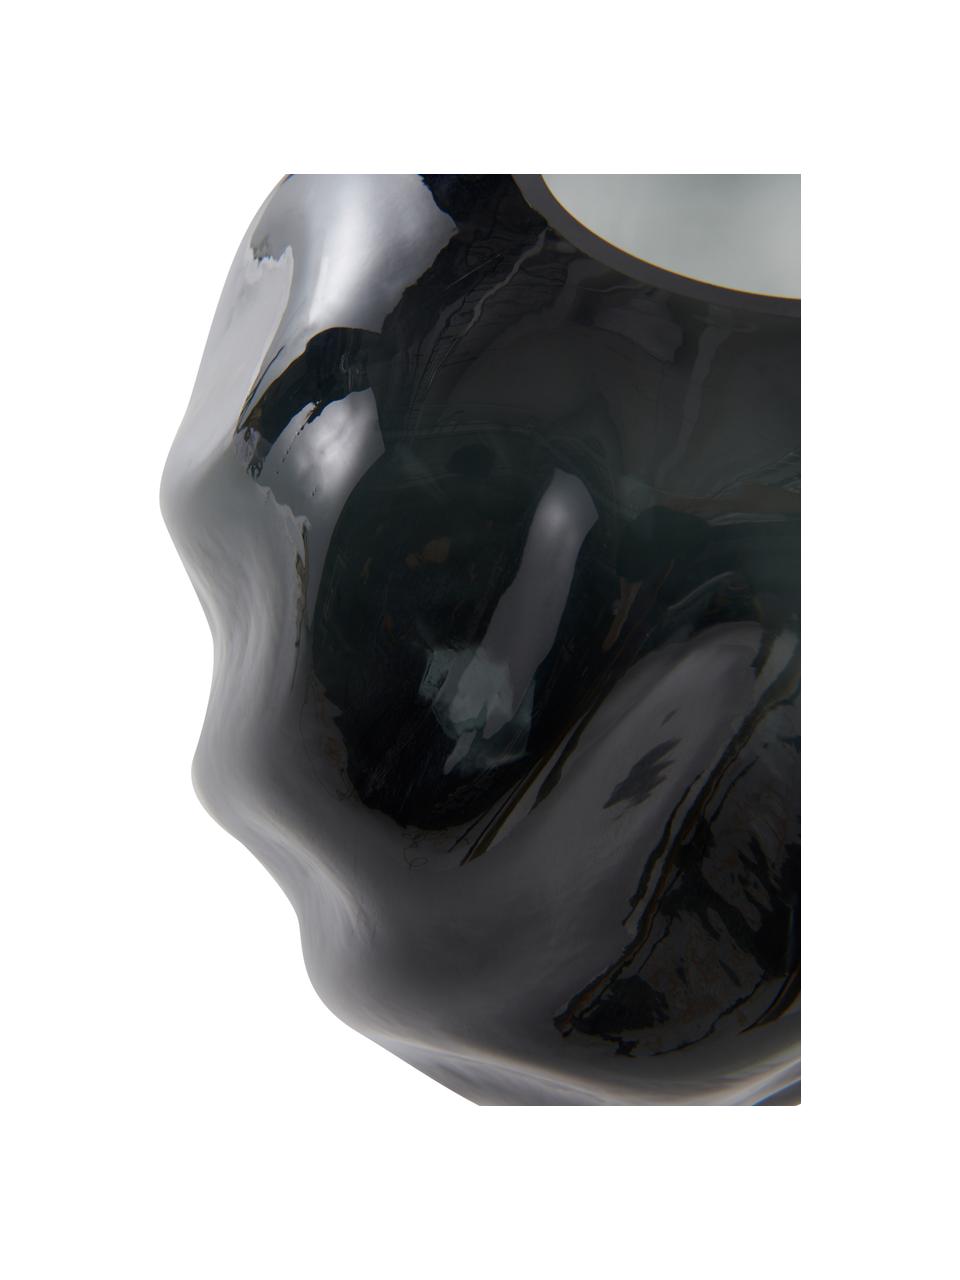 Glas-Vase Brielle in Schwarz, Glas, Schwarztöne, Transparent, Ø 20 x H 21 cm